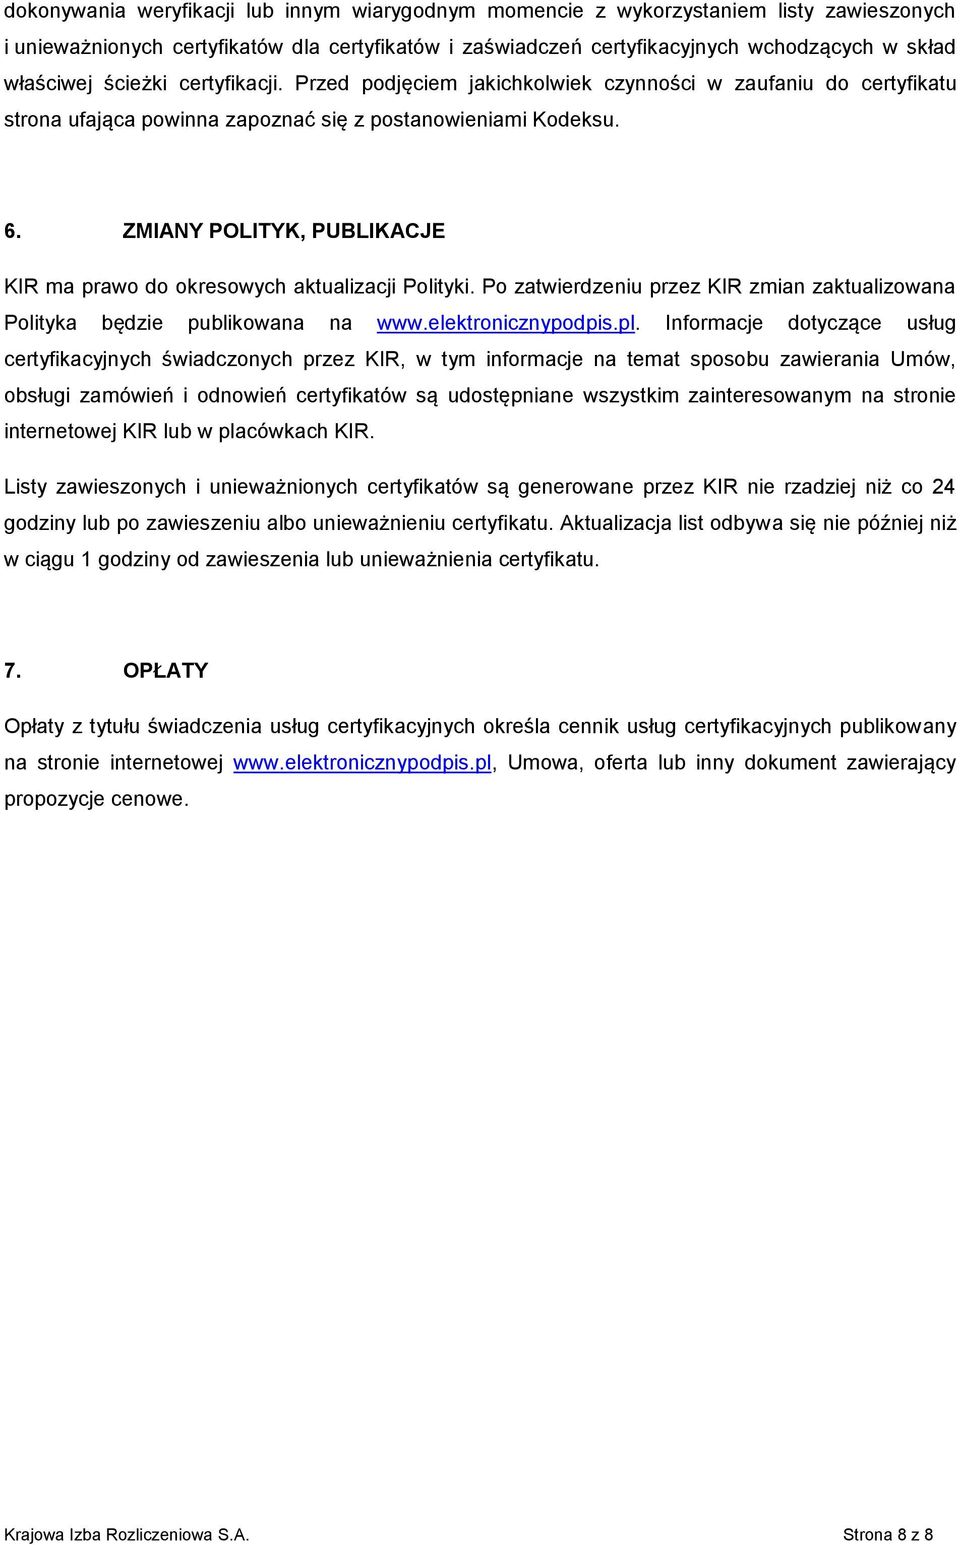 ZMIANY POLITYK, PUBLIKACJE KIR ma prawo do okresowych aktualizacji Polityki. Po zatwierdzeniu przez KIR zmian zaktualizowana Polityka będzie publikowana na www.elektronicznypodpis.pl.